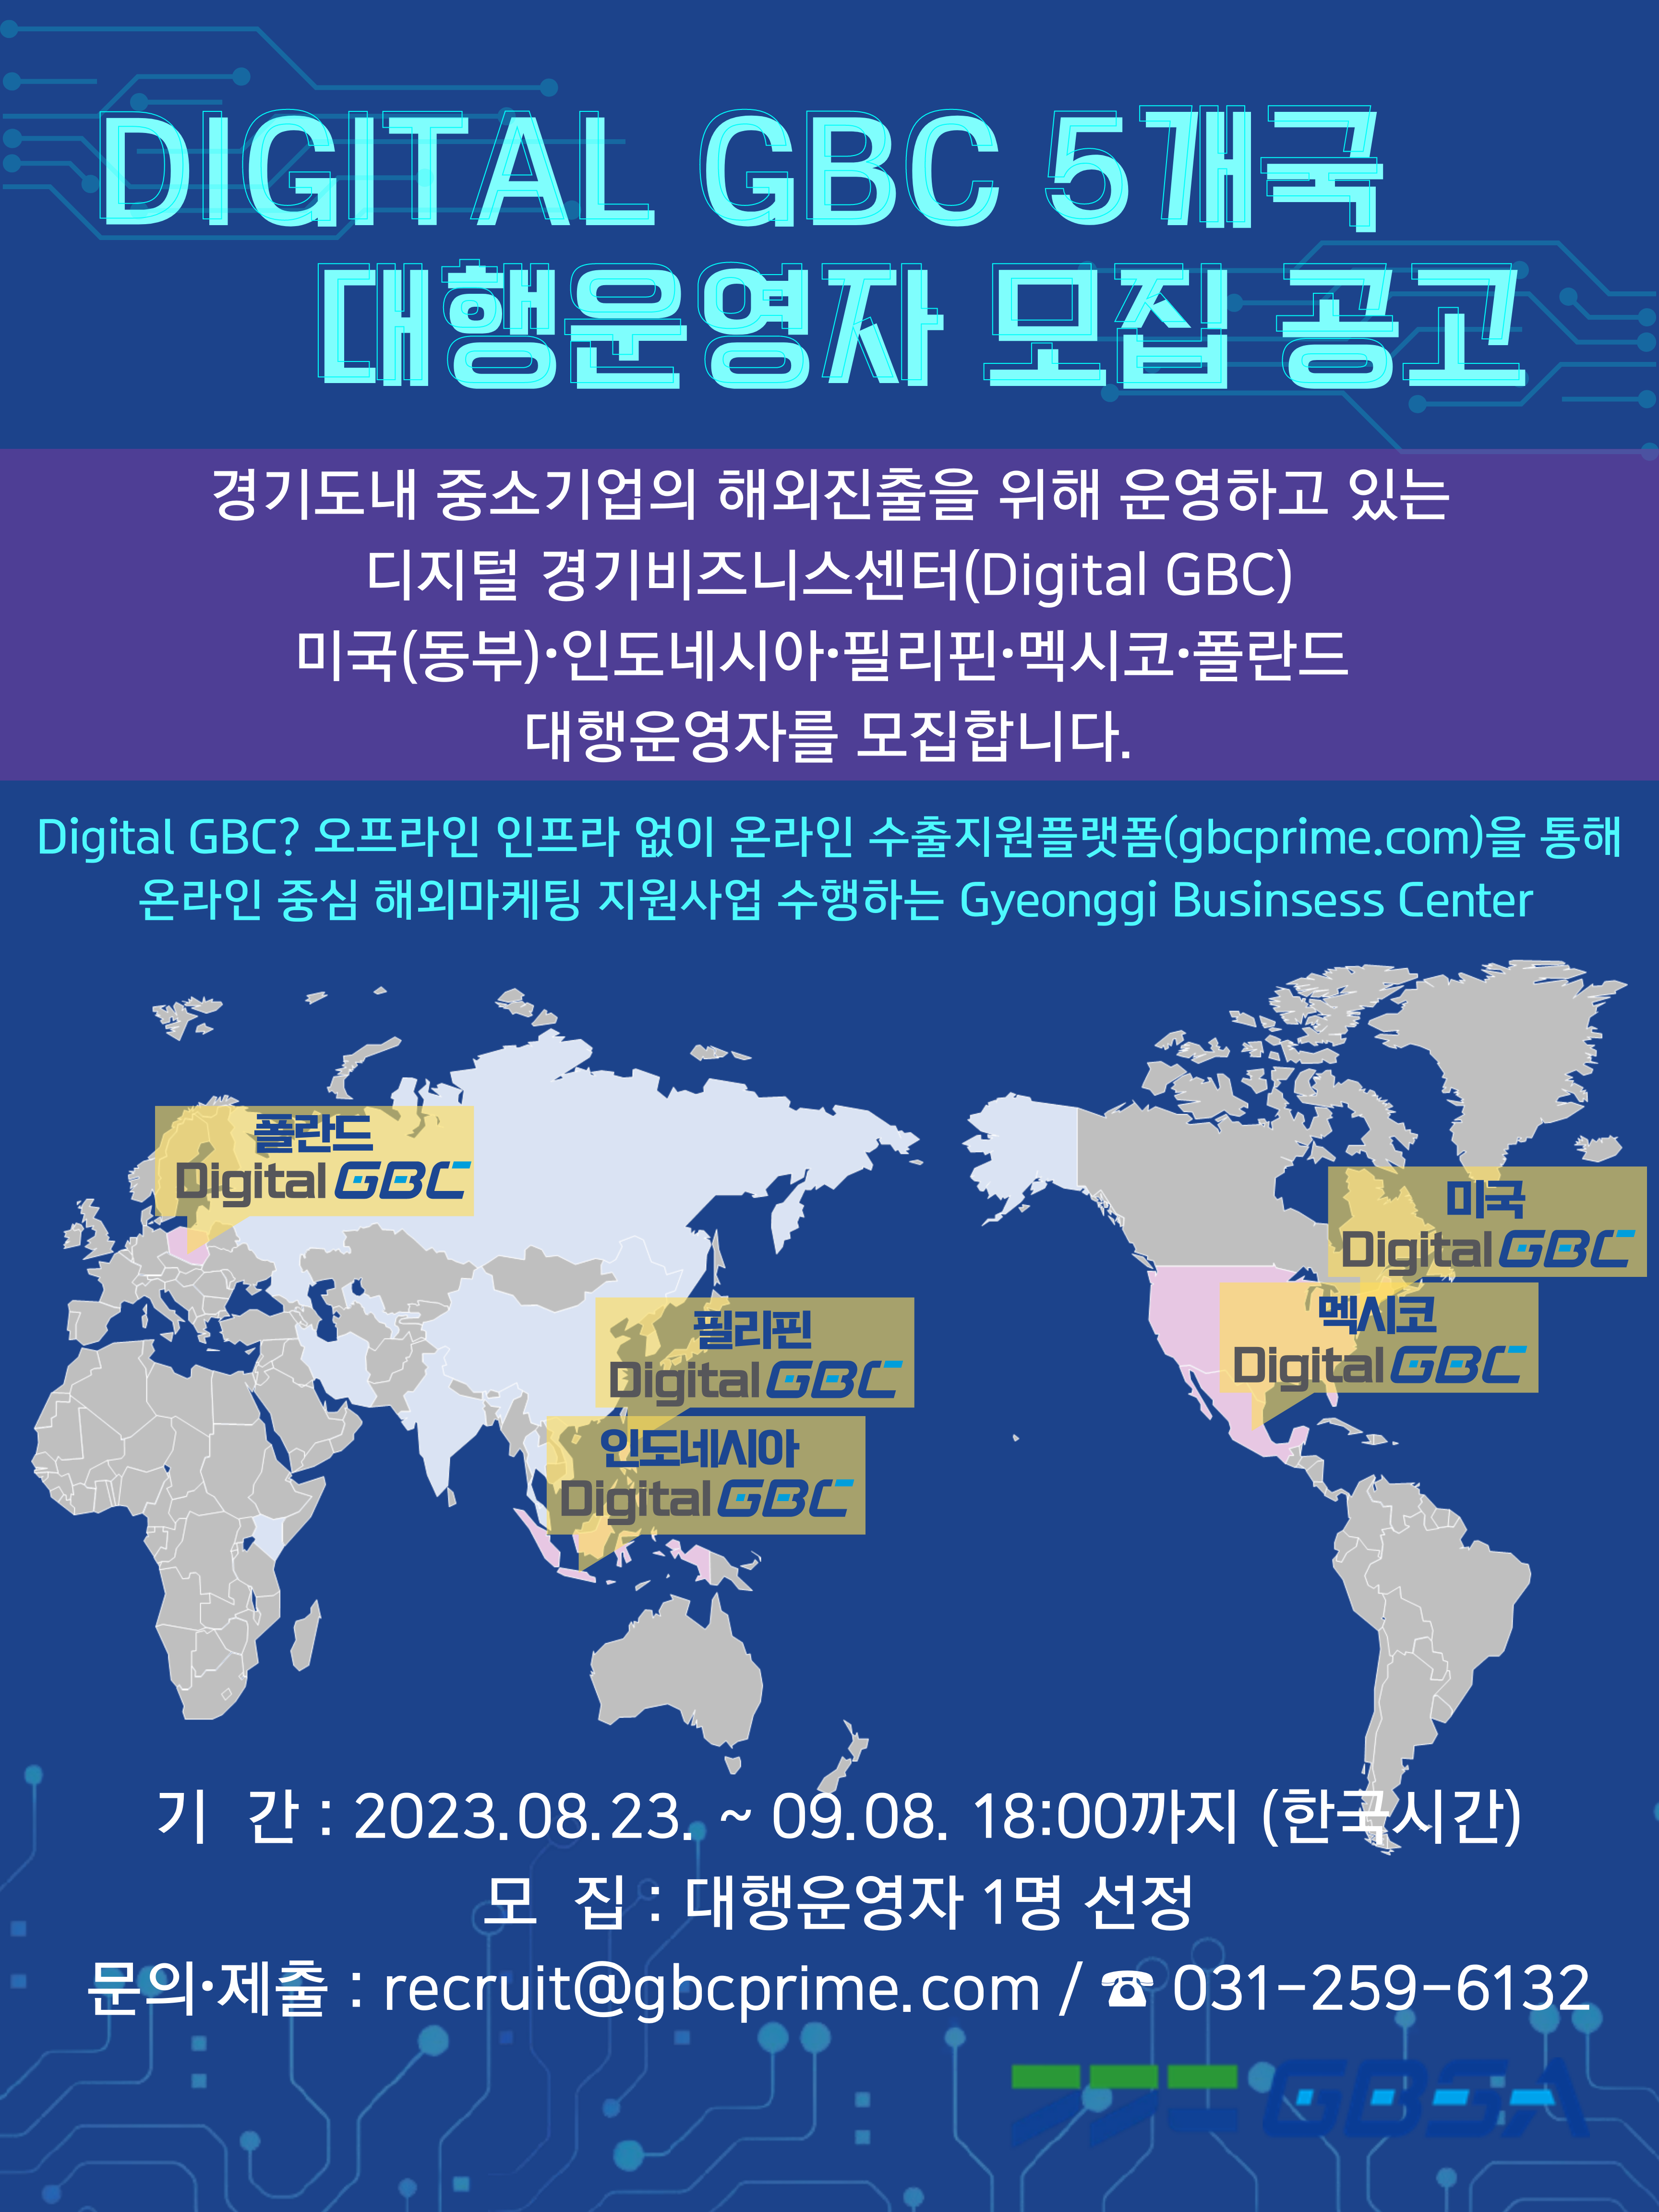 [포스터] 공고포스터_Digital GBC_5개국.png 이미지입니다.